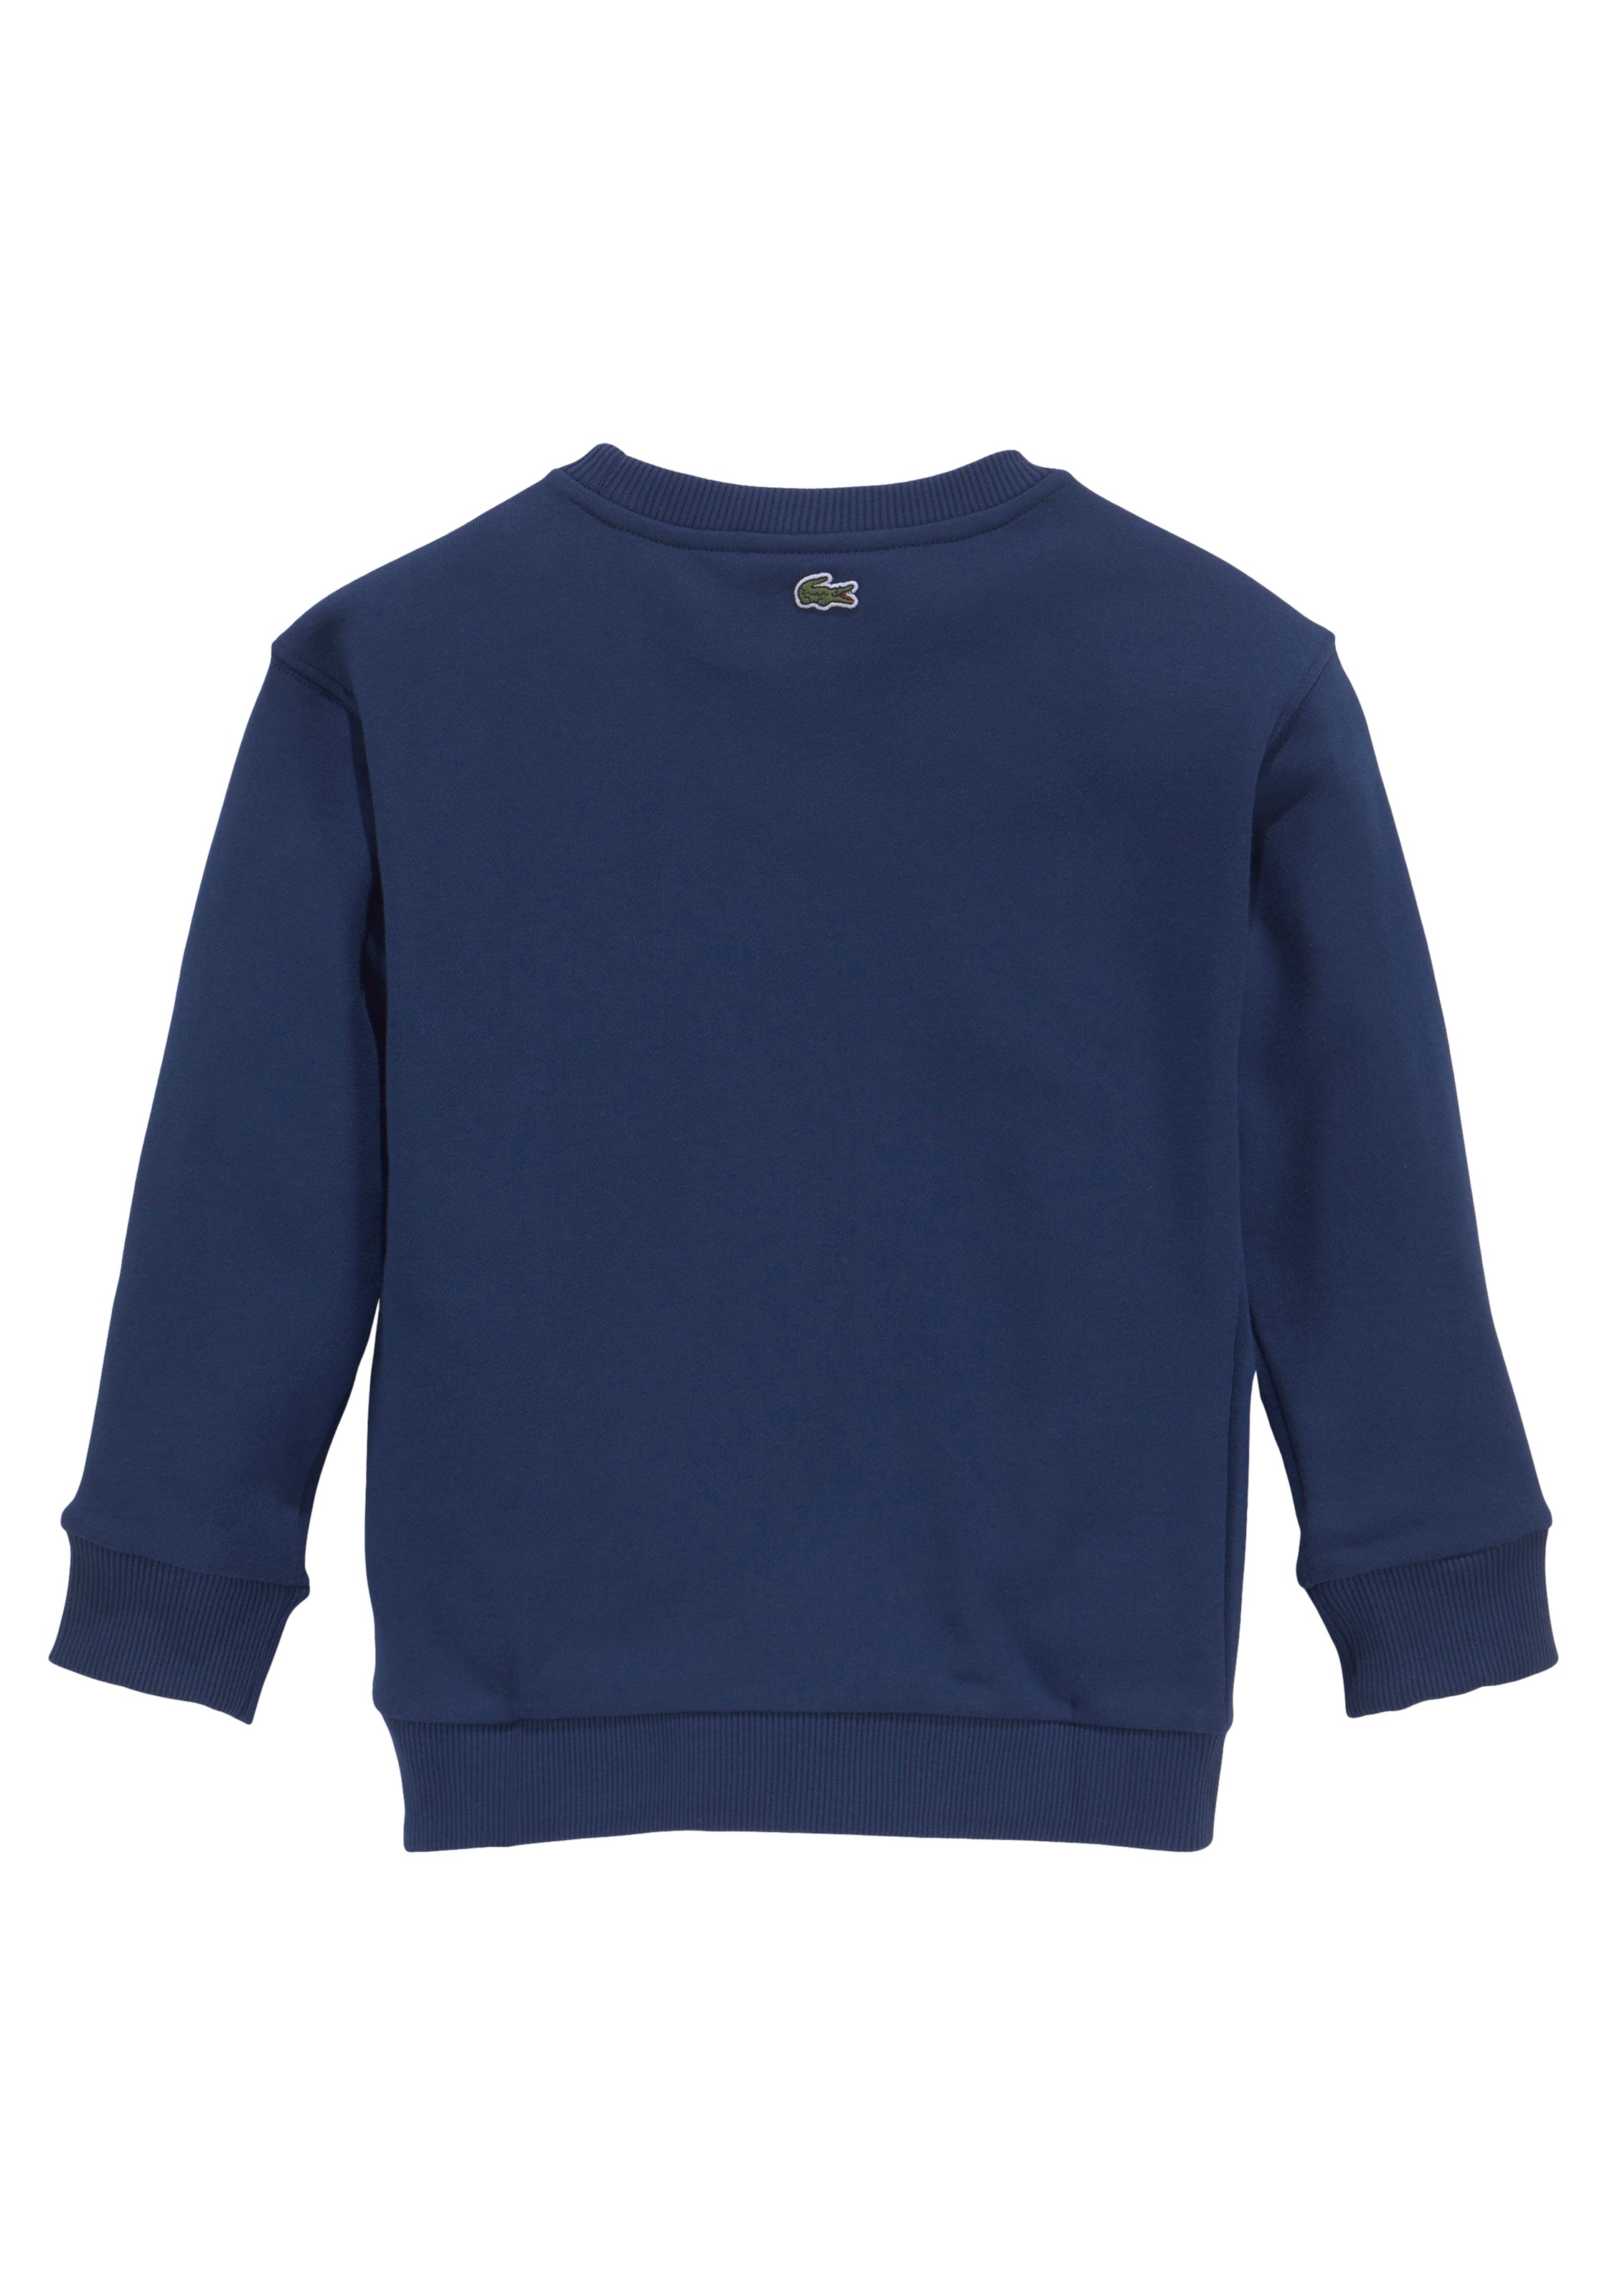 Lacoste Sweatshirt, Kinder Kids Junior MiniMe,mit modernem Labeldruck auf  der Brust bestellen bei OTTO